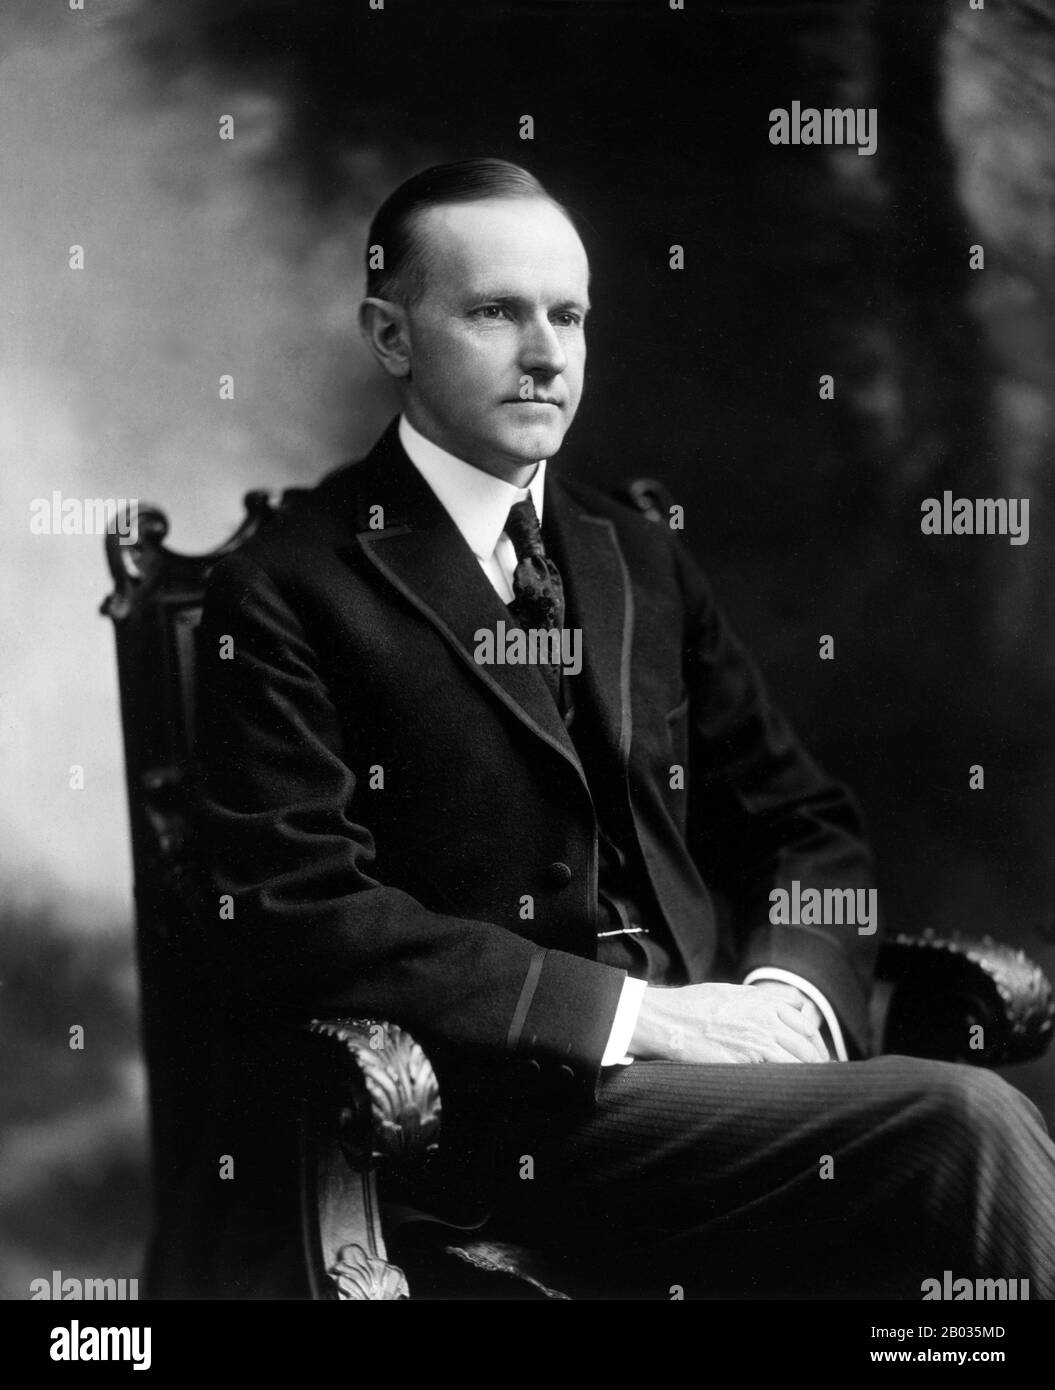 John Calvin Coolidge Jr. (4. Juli 1872 - 5. Januar 1933) war der 30. Präsident der Vereinigten Staaten (1923-29.). Coolidge, ein republikanischer Anwalt aus Vermont, arbeitete sich auf der Leiter der Politik des Staates Massachusetts nach oben und wurde schließlich Gouverneur dieses Staates. 1920 wurde er zum 29. Vizepräsidenten gewählt und trat nach dem plötzlichen Tod von Warren G. Harding im Jahr 1923 die Präsidentschaft an. Er wurde im Jahr 1924 in eigener Wahl gewählt und erwarb sich einen Ruf als Konservativer der kleinen Regierung. Coolidges Ruhestand war relativ kurz, da er im Alter von 60 Jahren im Januar 1933, weniger als zwei Monate, starb Stockfoto